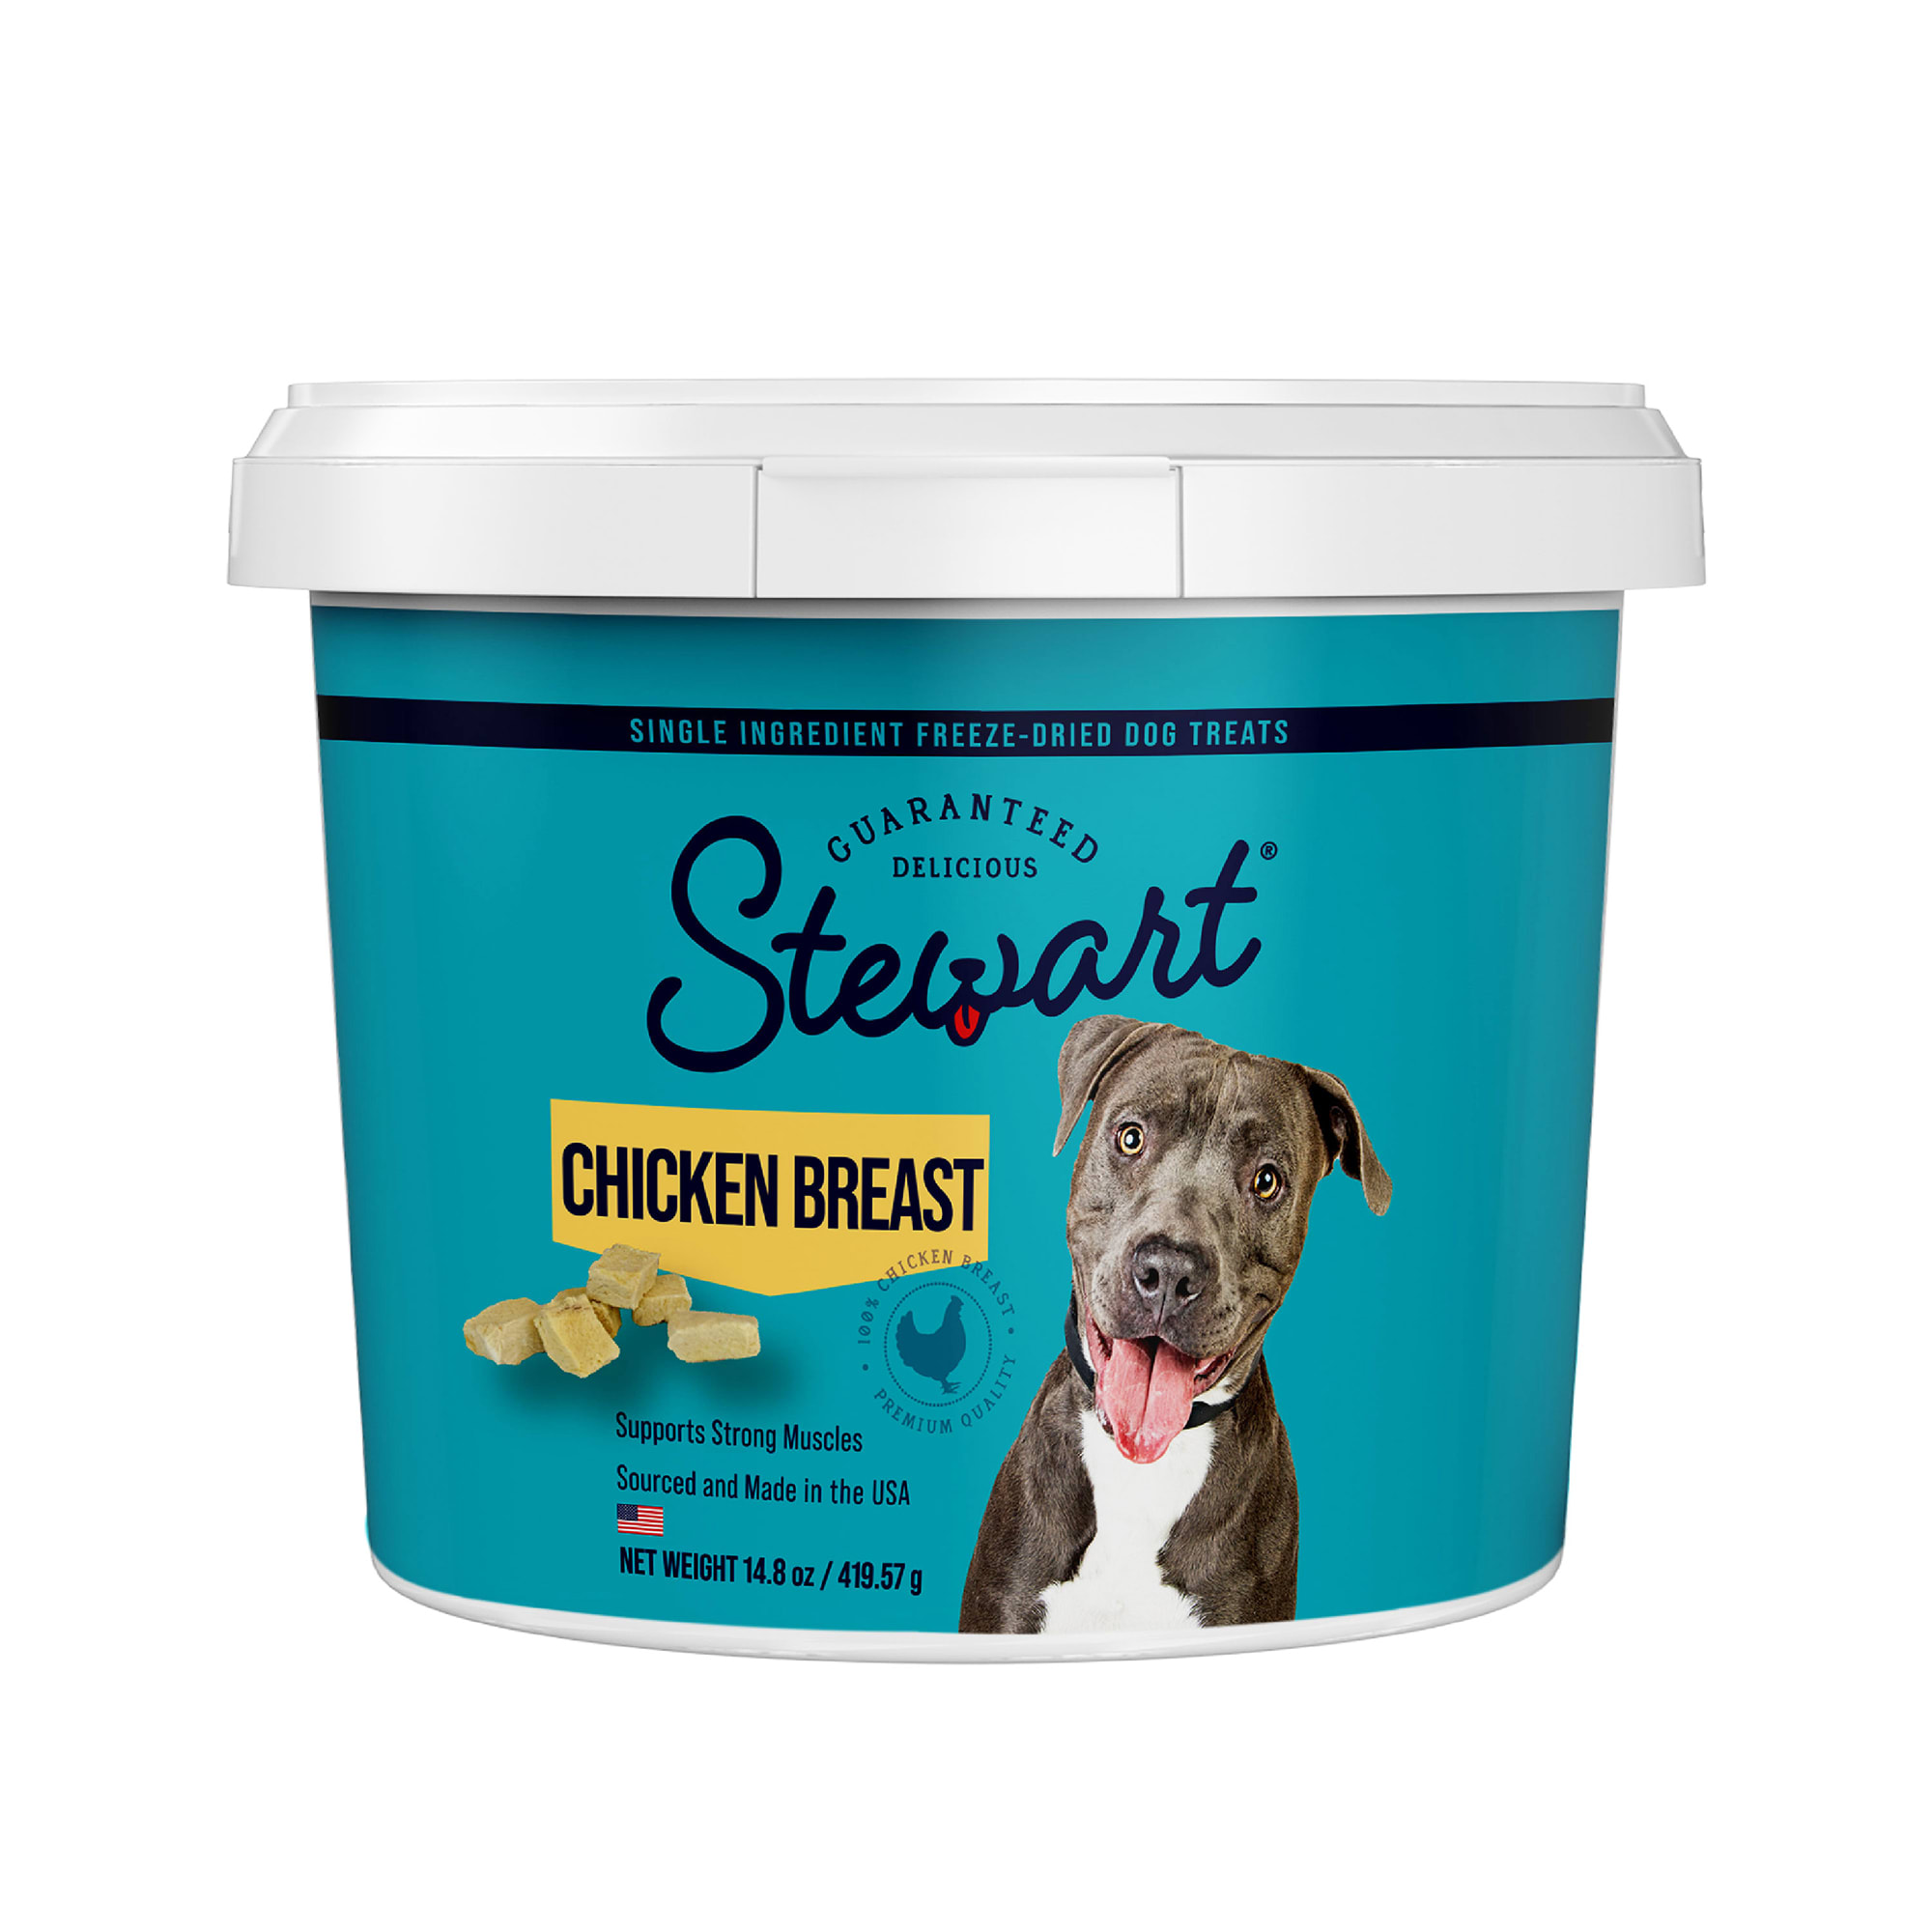 Stewart Chicken Breast Freeze Dried Dog Treats, 14.8 oz.